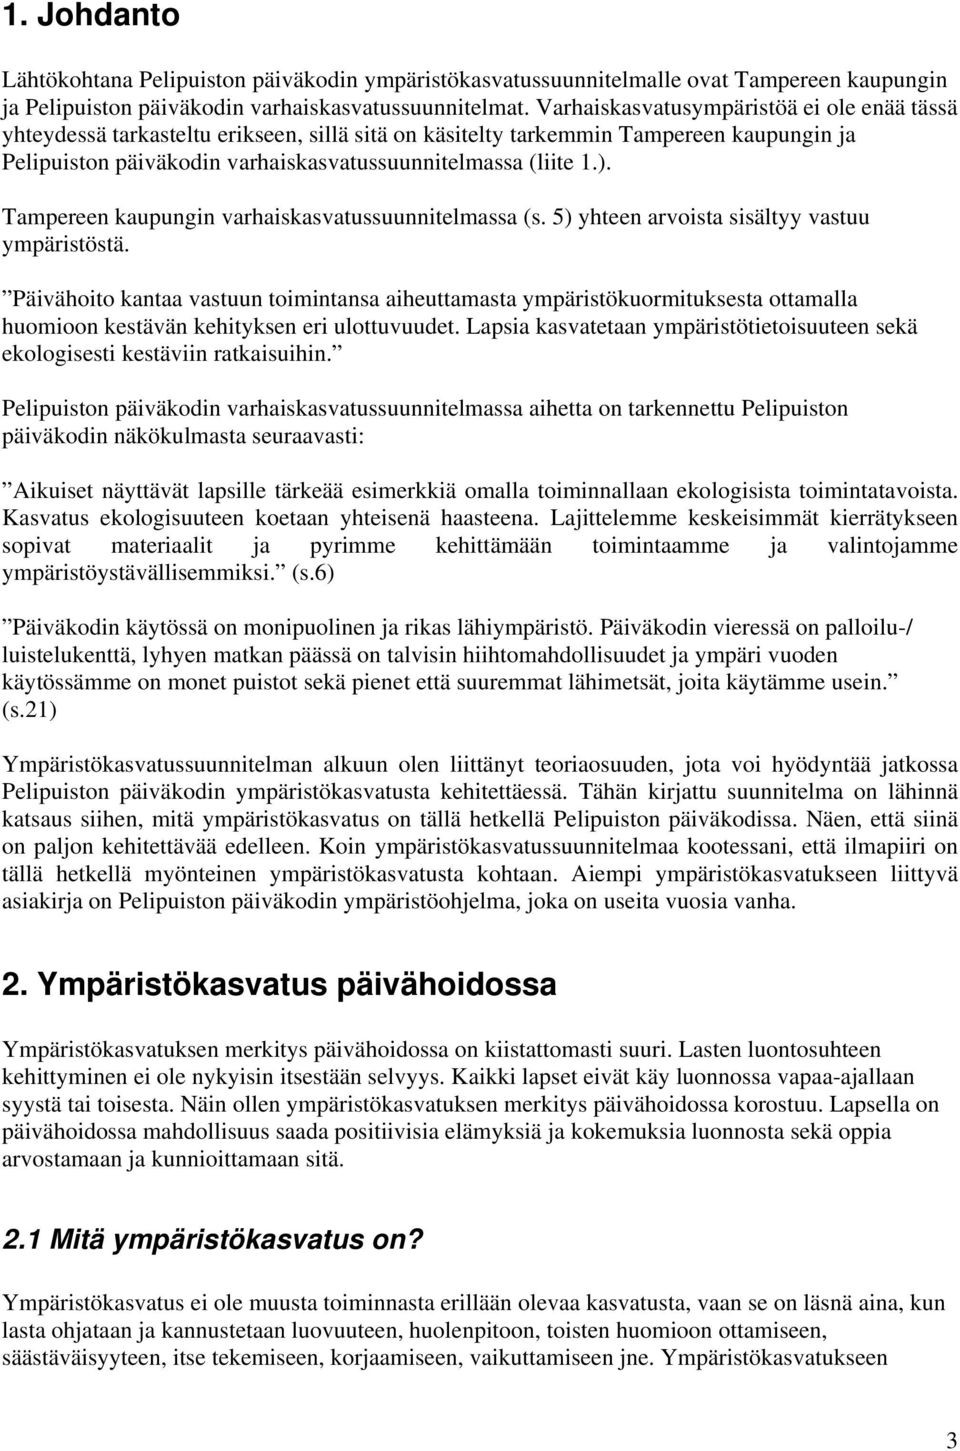 Tampereen kaupungin varhaiskasvatussuunnitelmassa (s. 5) yhteen arvoista sisältyy vastuu ympäristöstä.